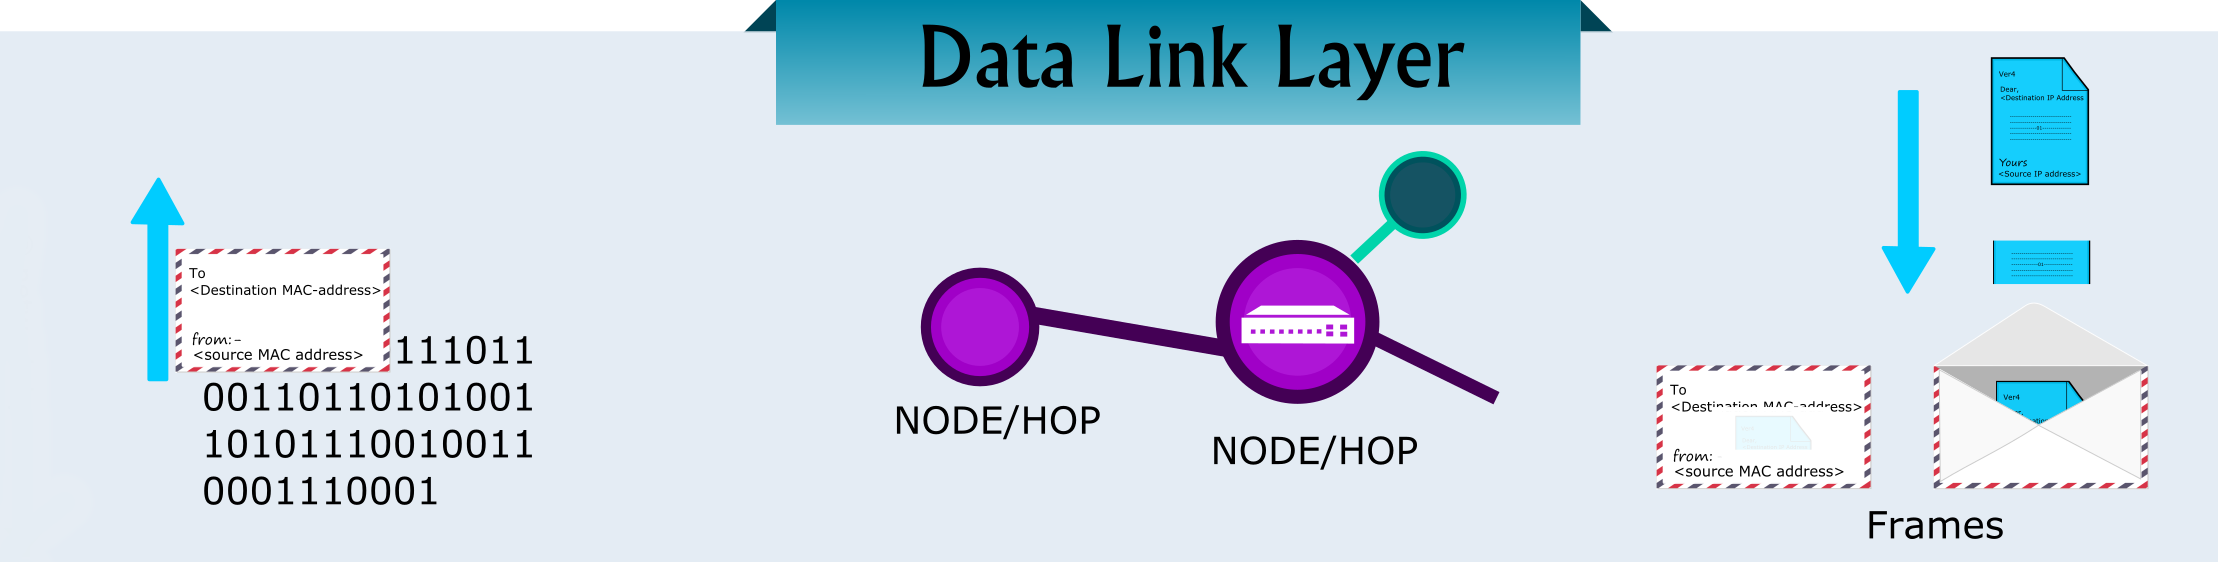 data link layer in OSI model 1